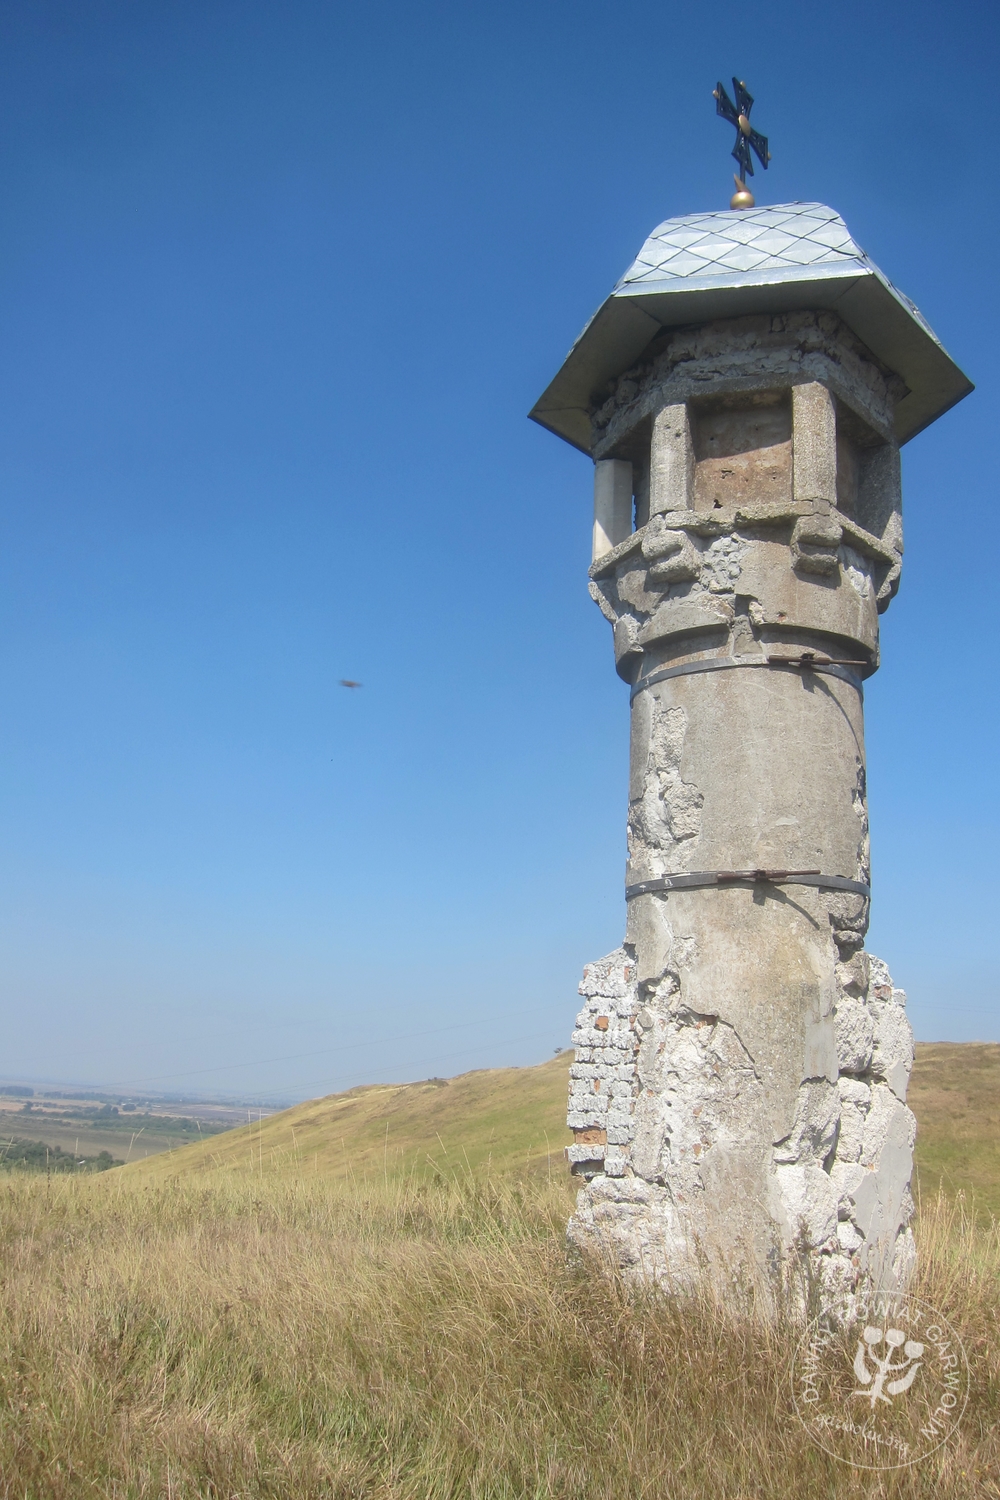 Gołogóry, kolumna Marka 1271 r. To rok wygranej bitwy a wzgórze jest miejscem śmierci tatarskiego wielkiego chana